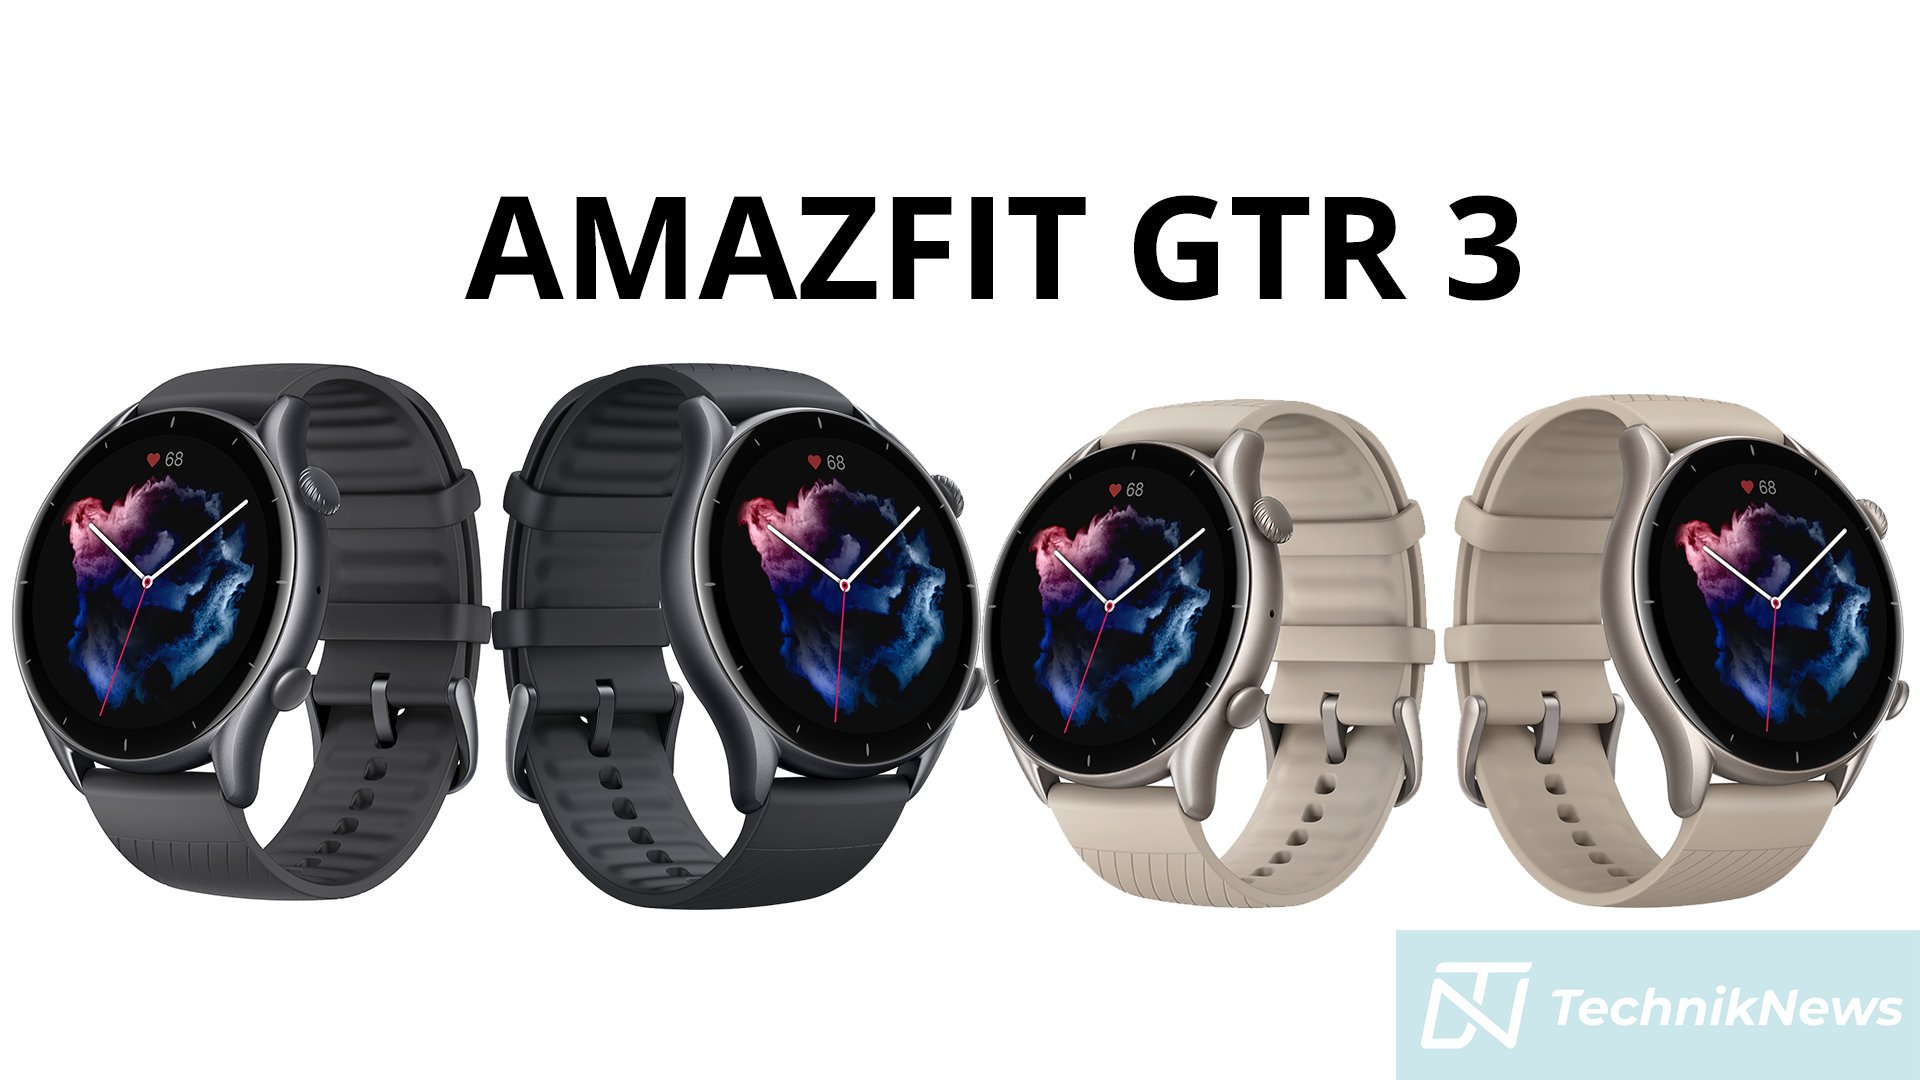 Amazfit GTR 3 Pro vs Amazfit GTR 3 vs Amazfit GTS 3 